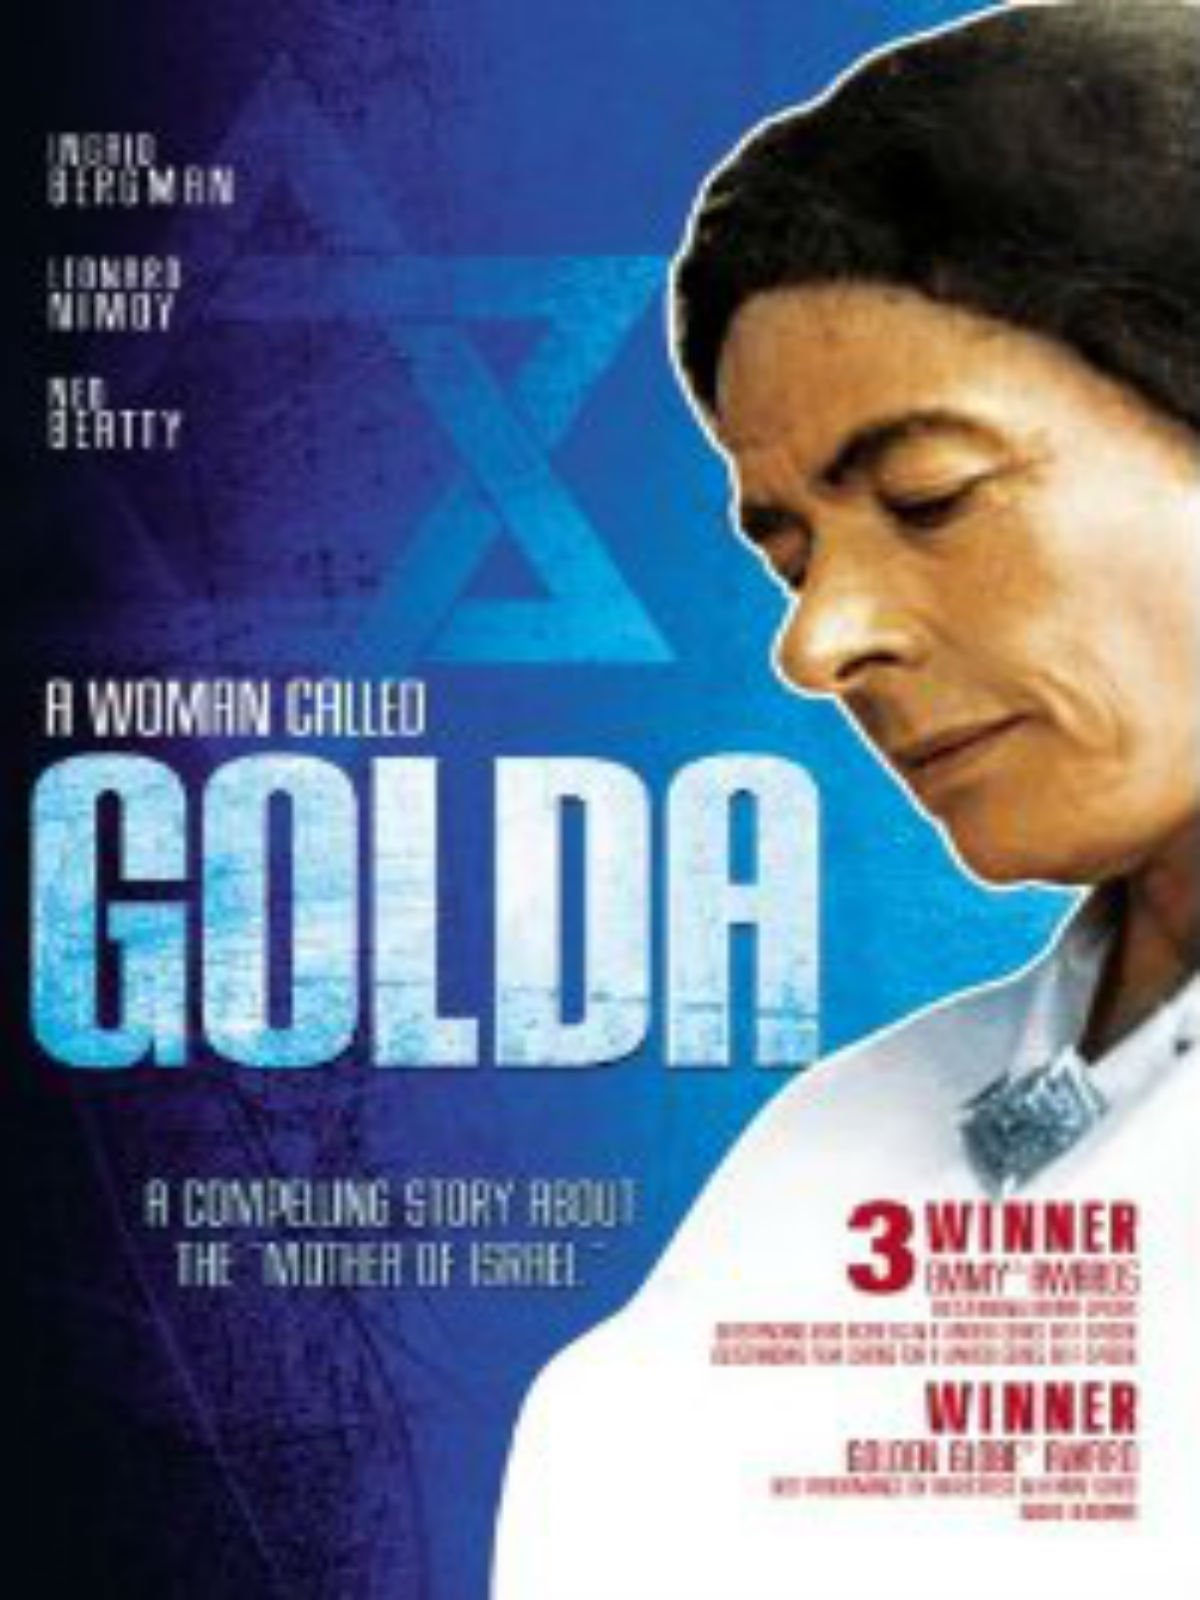 Golda - A Mulher de Uma Nação“: saiba quem é a figura histórica